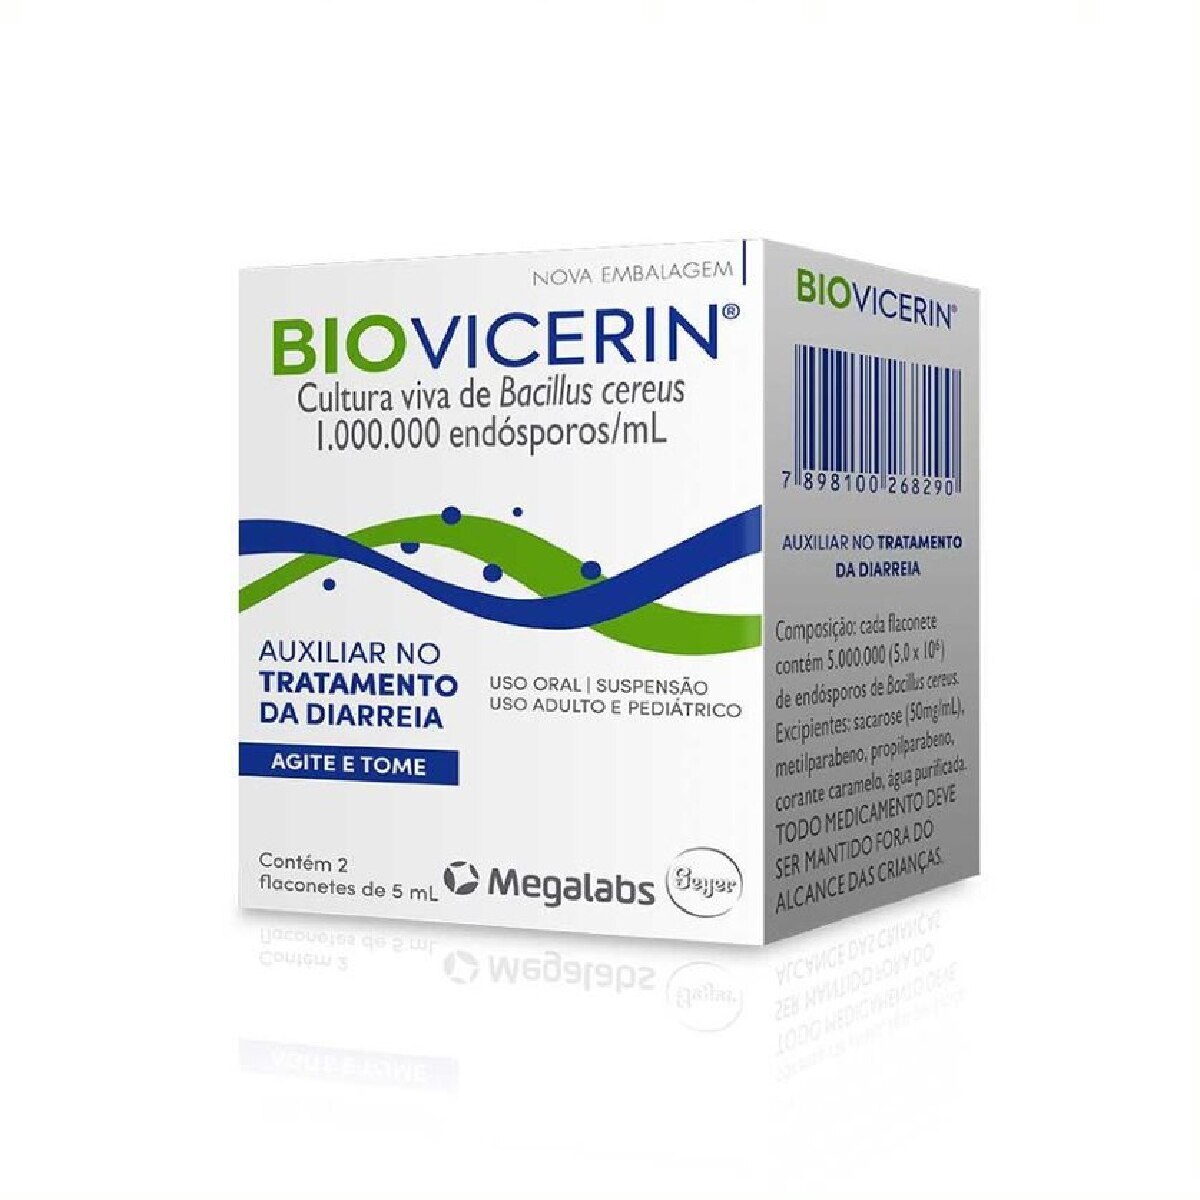 Biovicerin Suspensao Oral 2 Flaconetes de 5ml